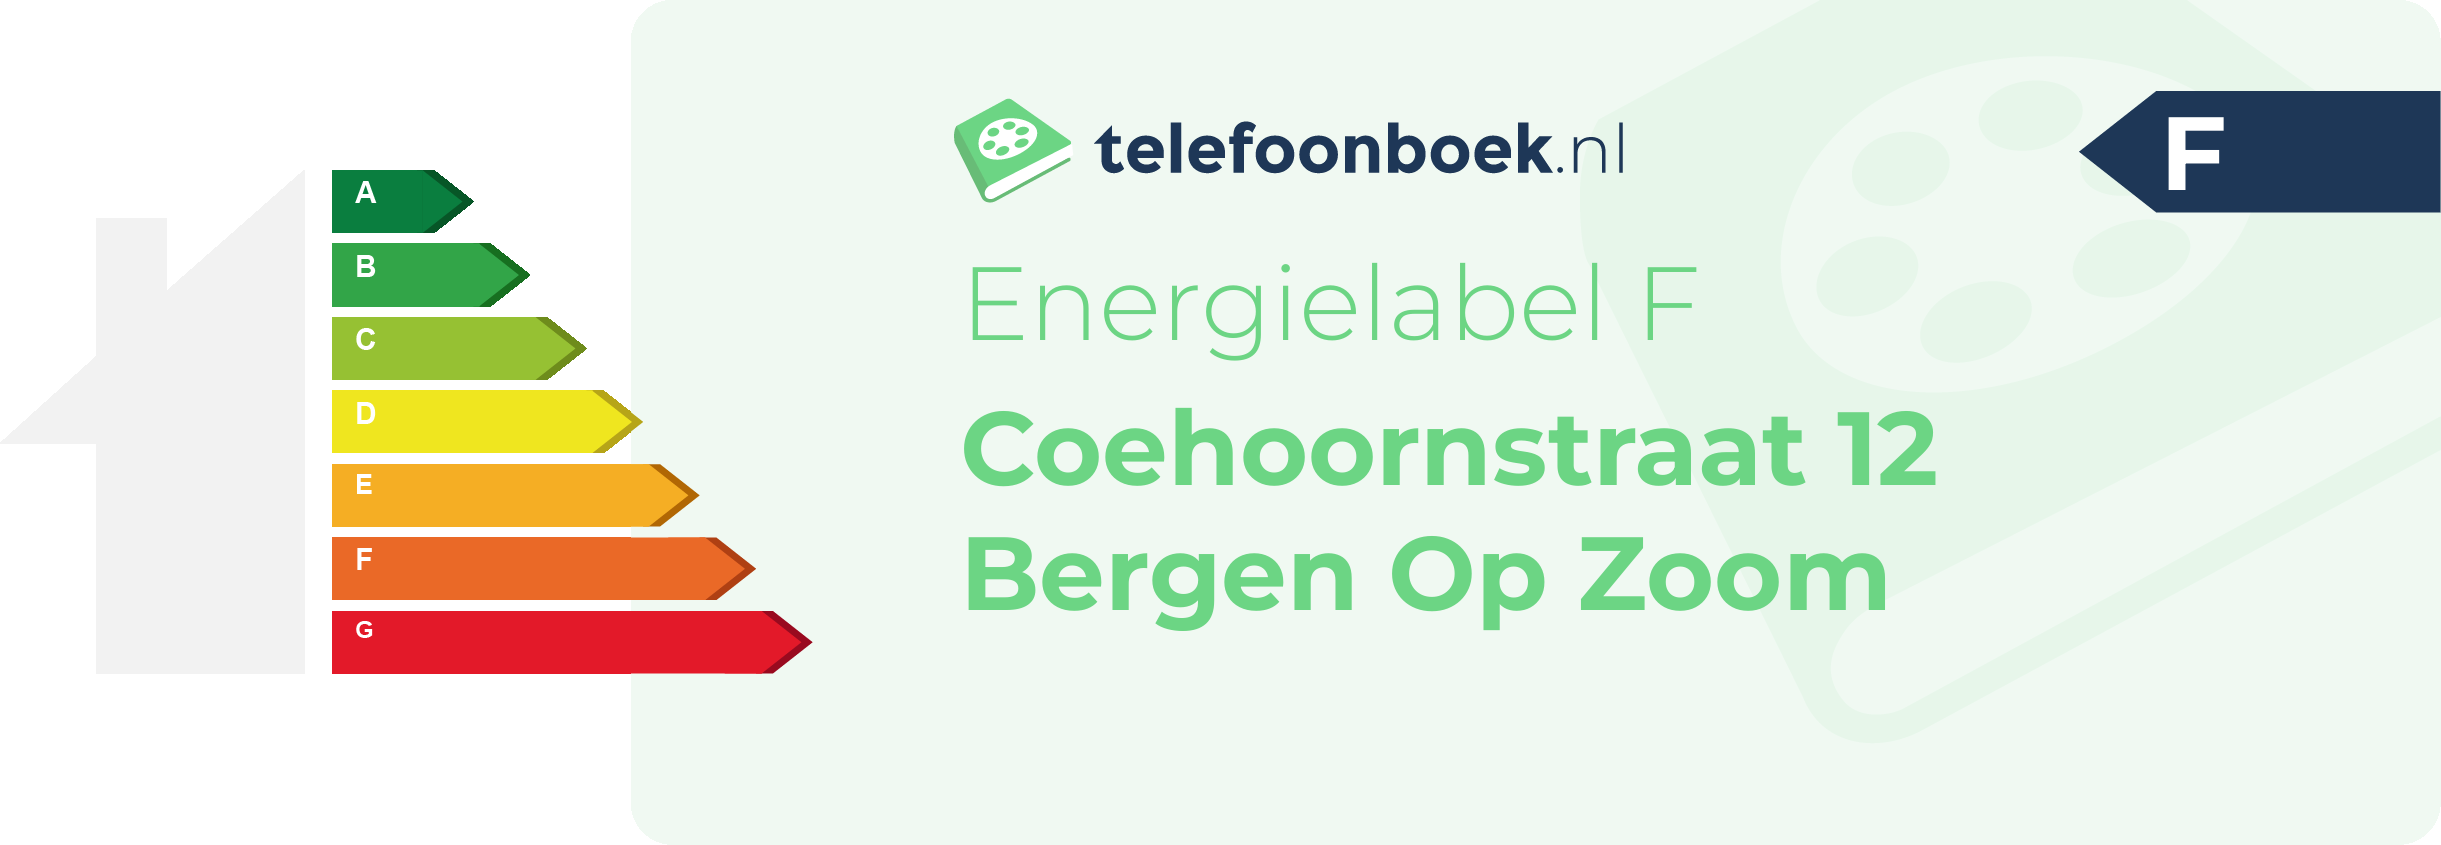 Energielabel Coehoornstraat 12 Bergen Op Zoom